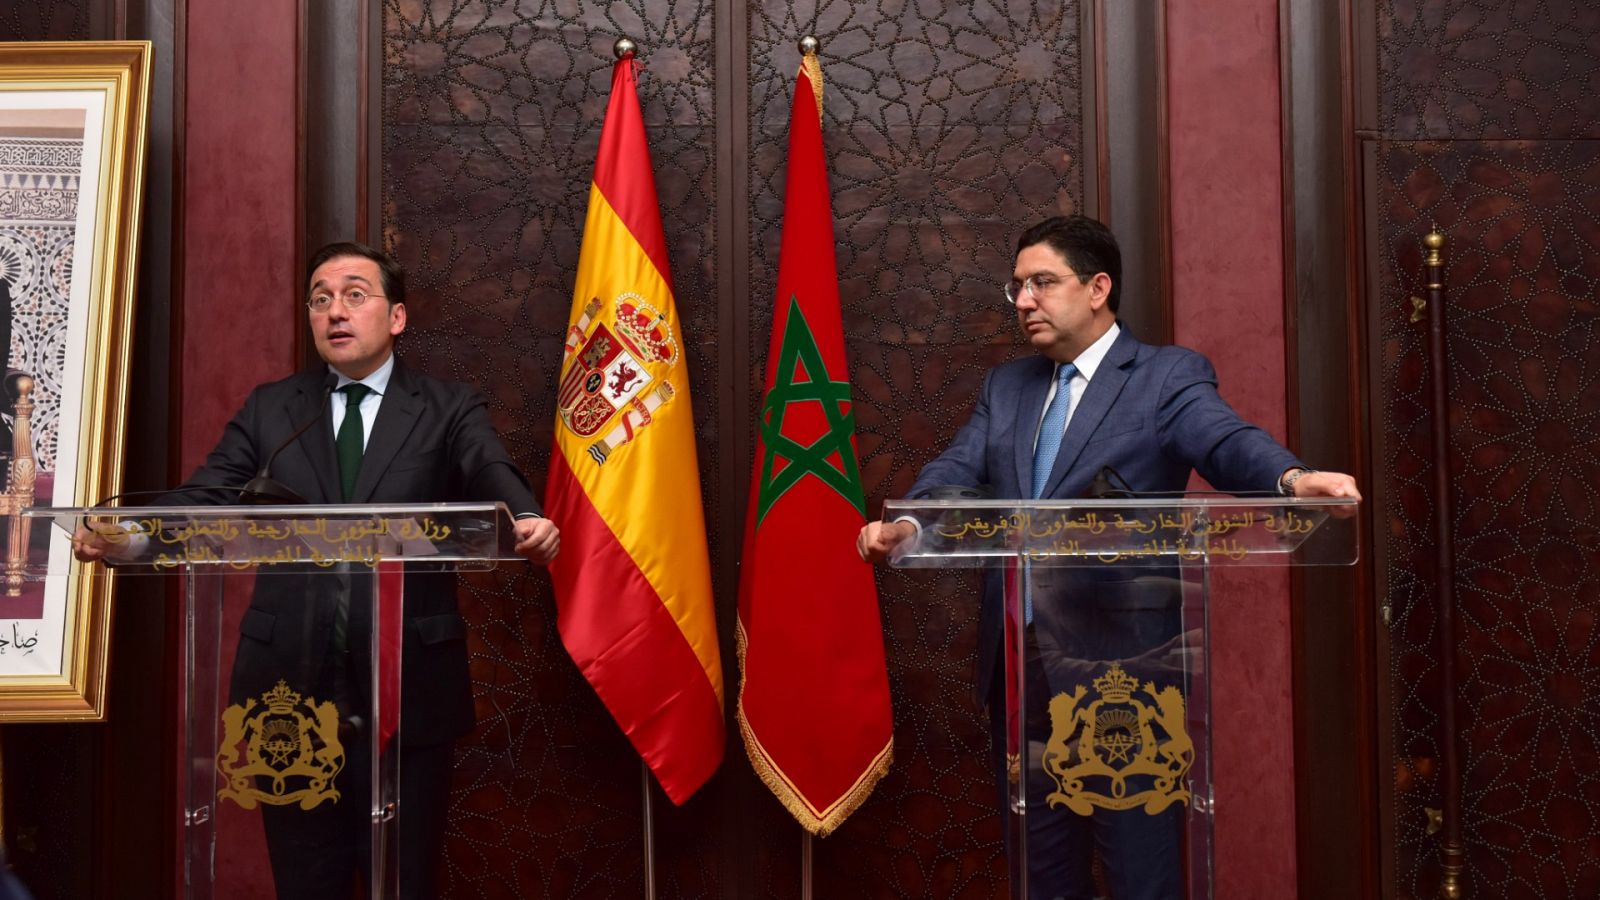 Los ministros de Exteriores de España y Marruecos, José Manuel Albares y Nasser Bourita, durante una rueda de prensa conjunta en Marrakech.